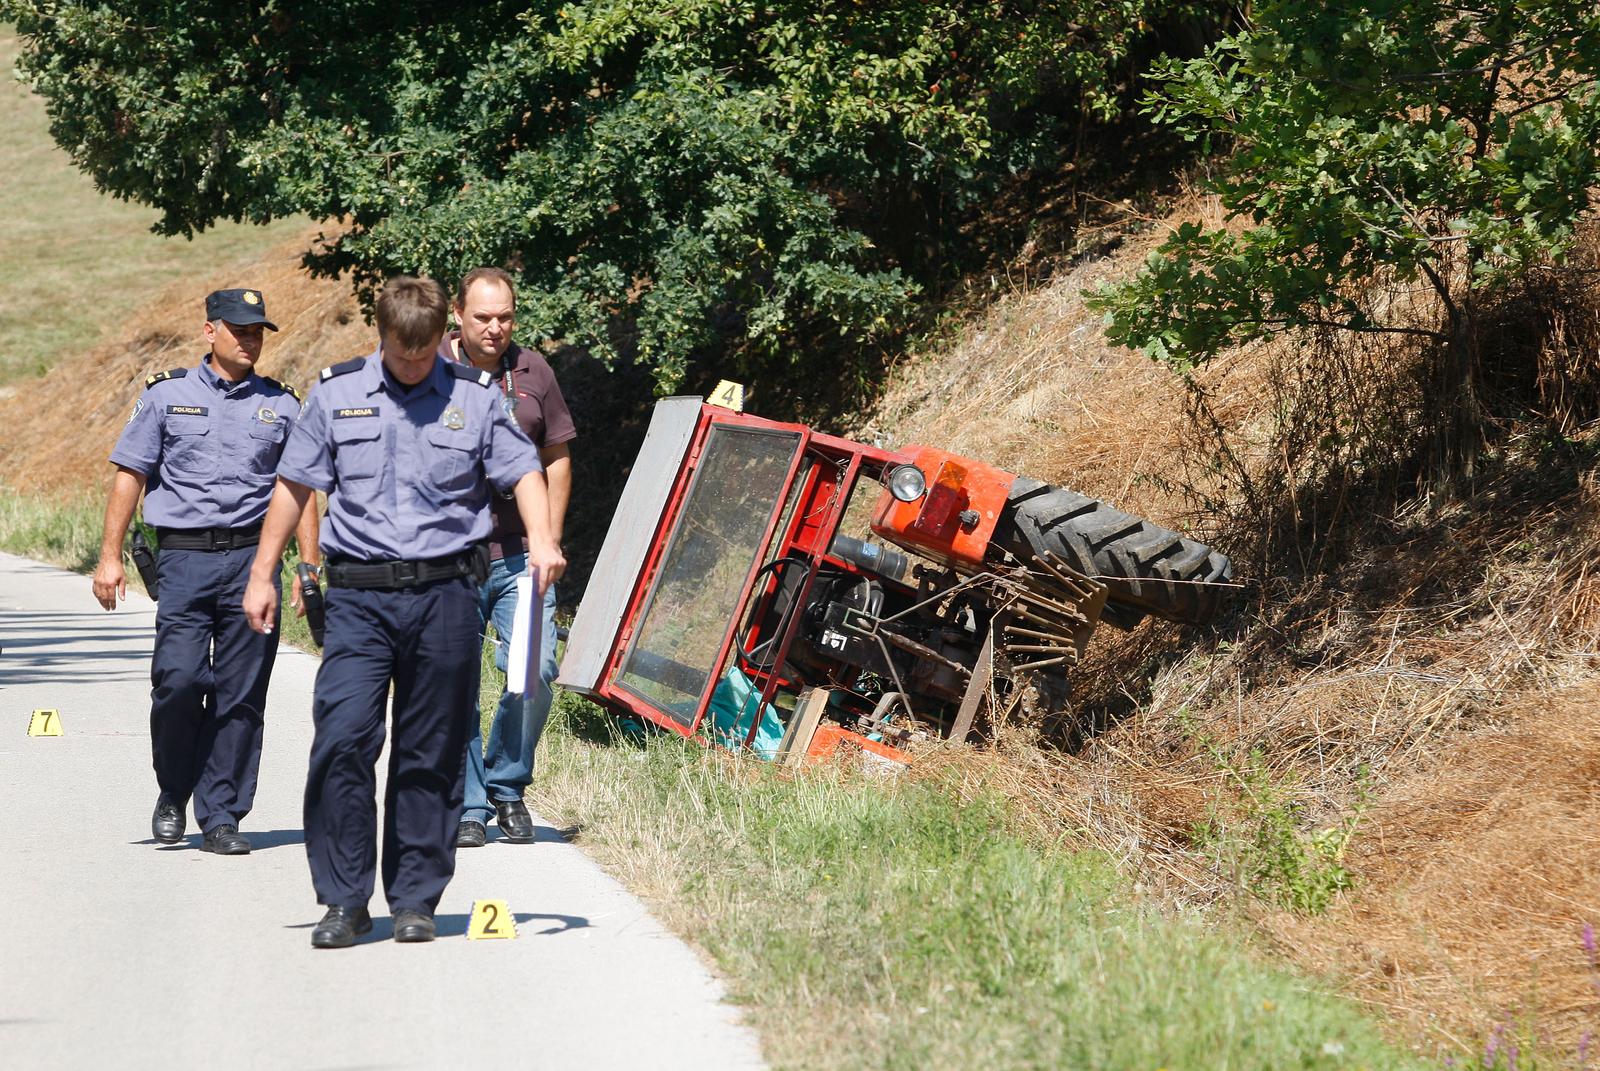 21.08.2012., Zavescak - Na cesti izmedju mjesta Zavescak i Prekopa, u Medjimurskoj zupaniji, oko 10 sati poginuo je 11-godisnji djecak vozeci se na traktoru koji je sletio u kanal. Traktorom je upravljao 48-godisnjak, a u trenutku prometne nesrece na vozilu je bilo jos jedno 11-godisnje dijete. Photo: Vjeran Zganec-Rogulja/PIXSELL